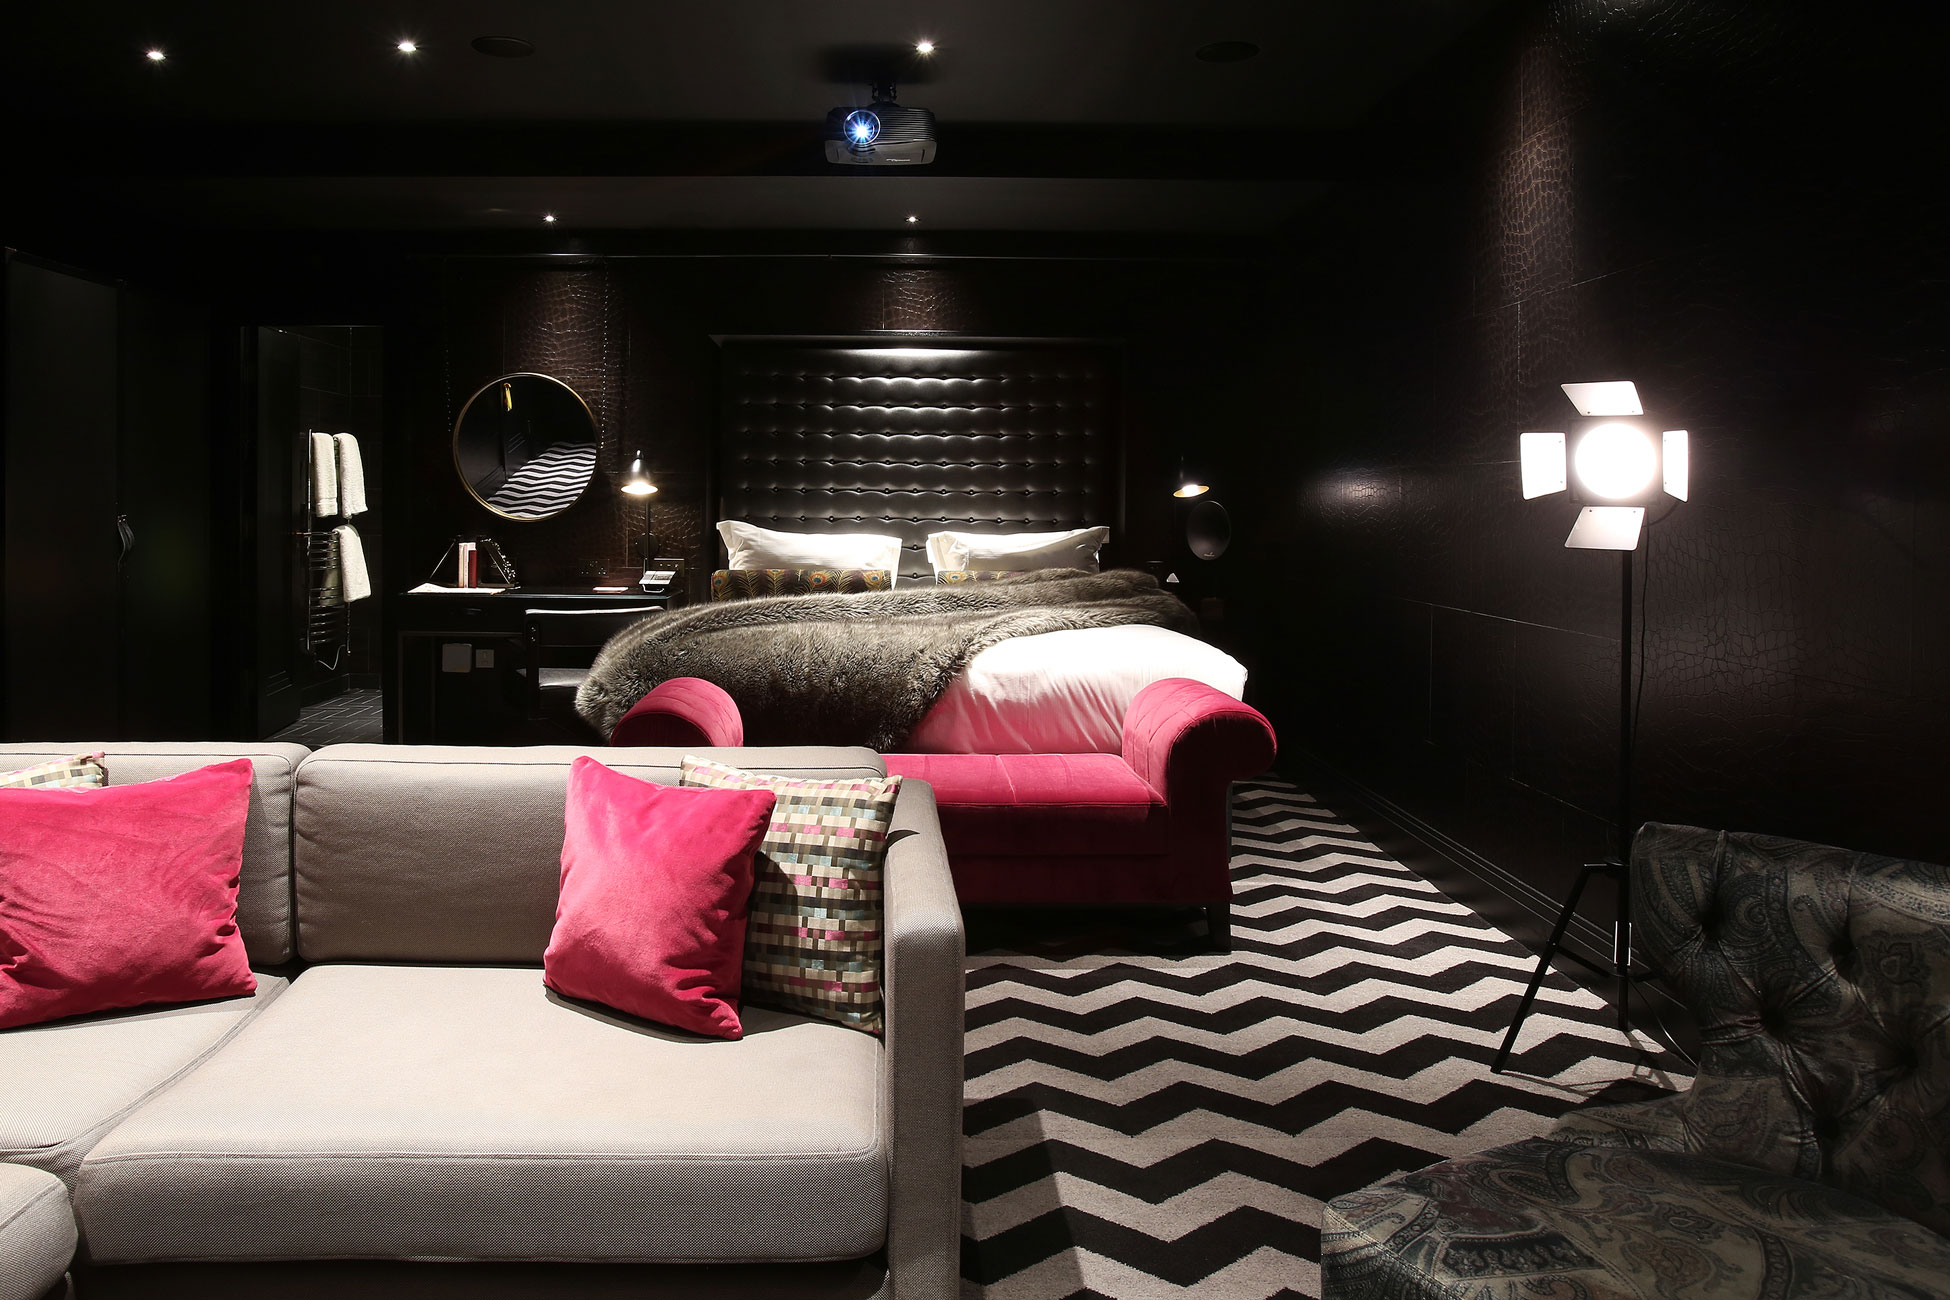 Hotel Gotham - bedroom suite interior